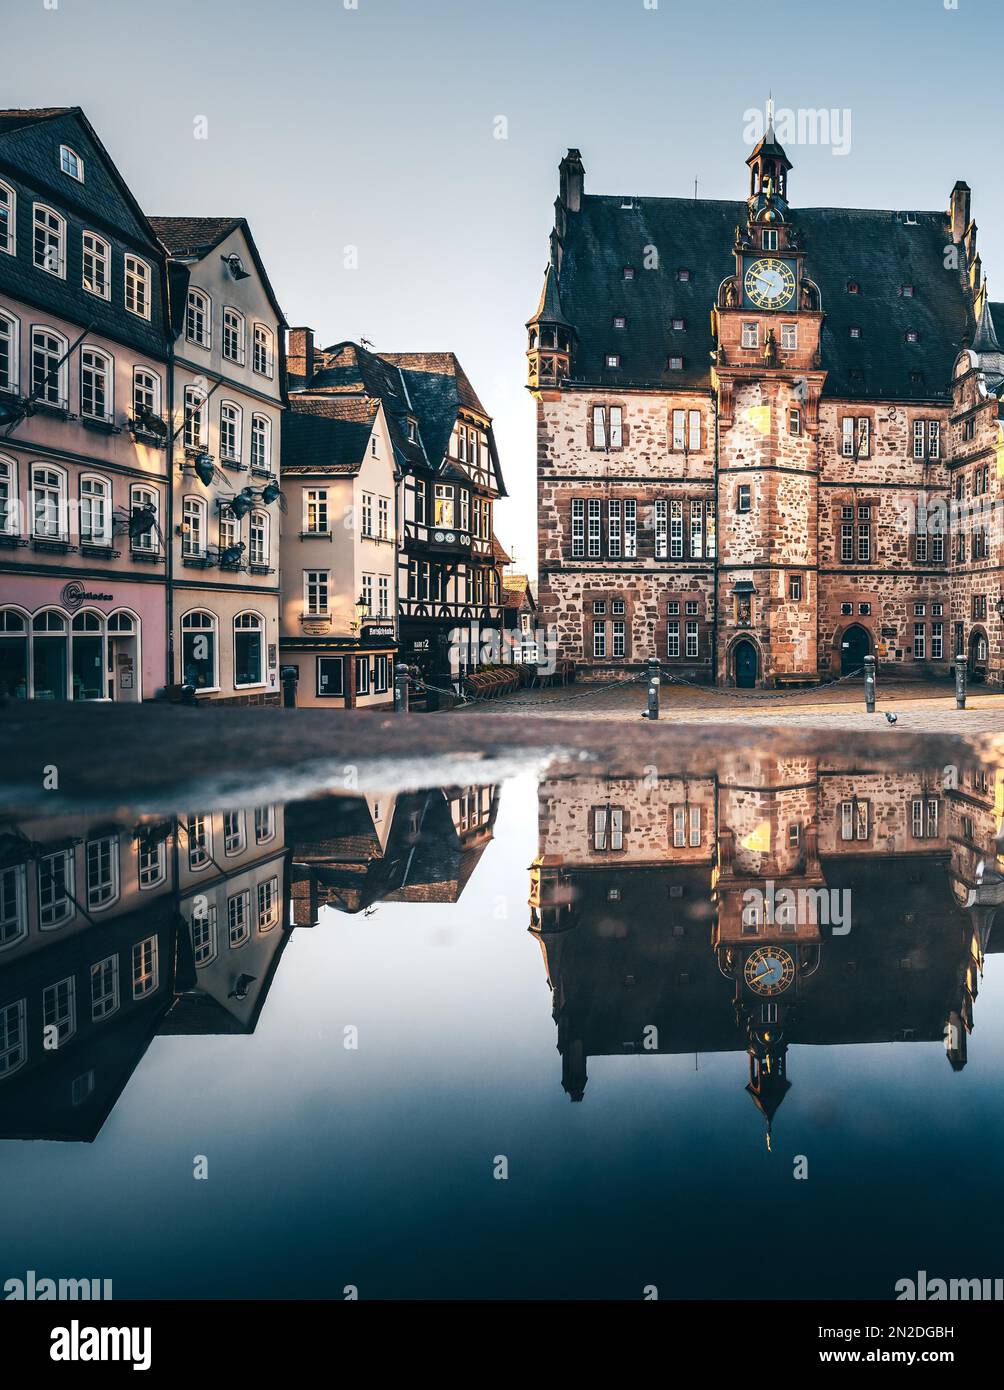 Wasserspiegelung am Morgen, Altes Rathaus am historischen Marktplatz, Marburg, Deutschland Stockfoto